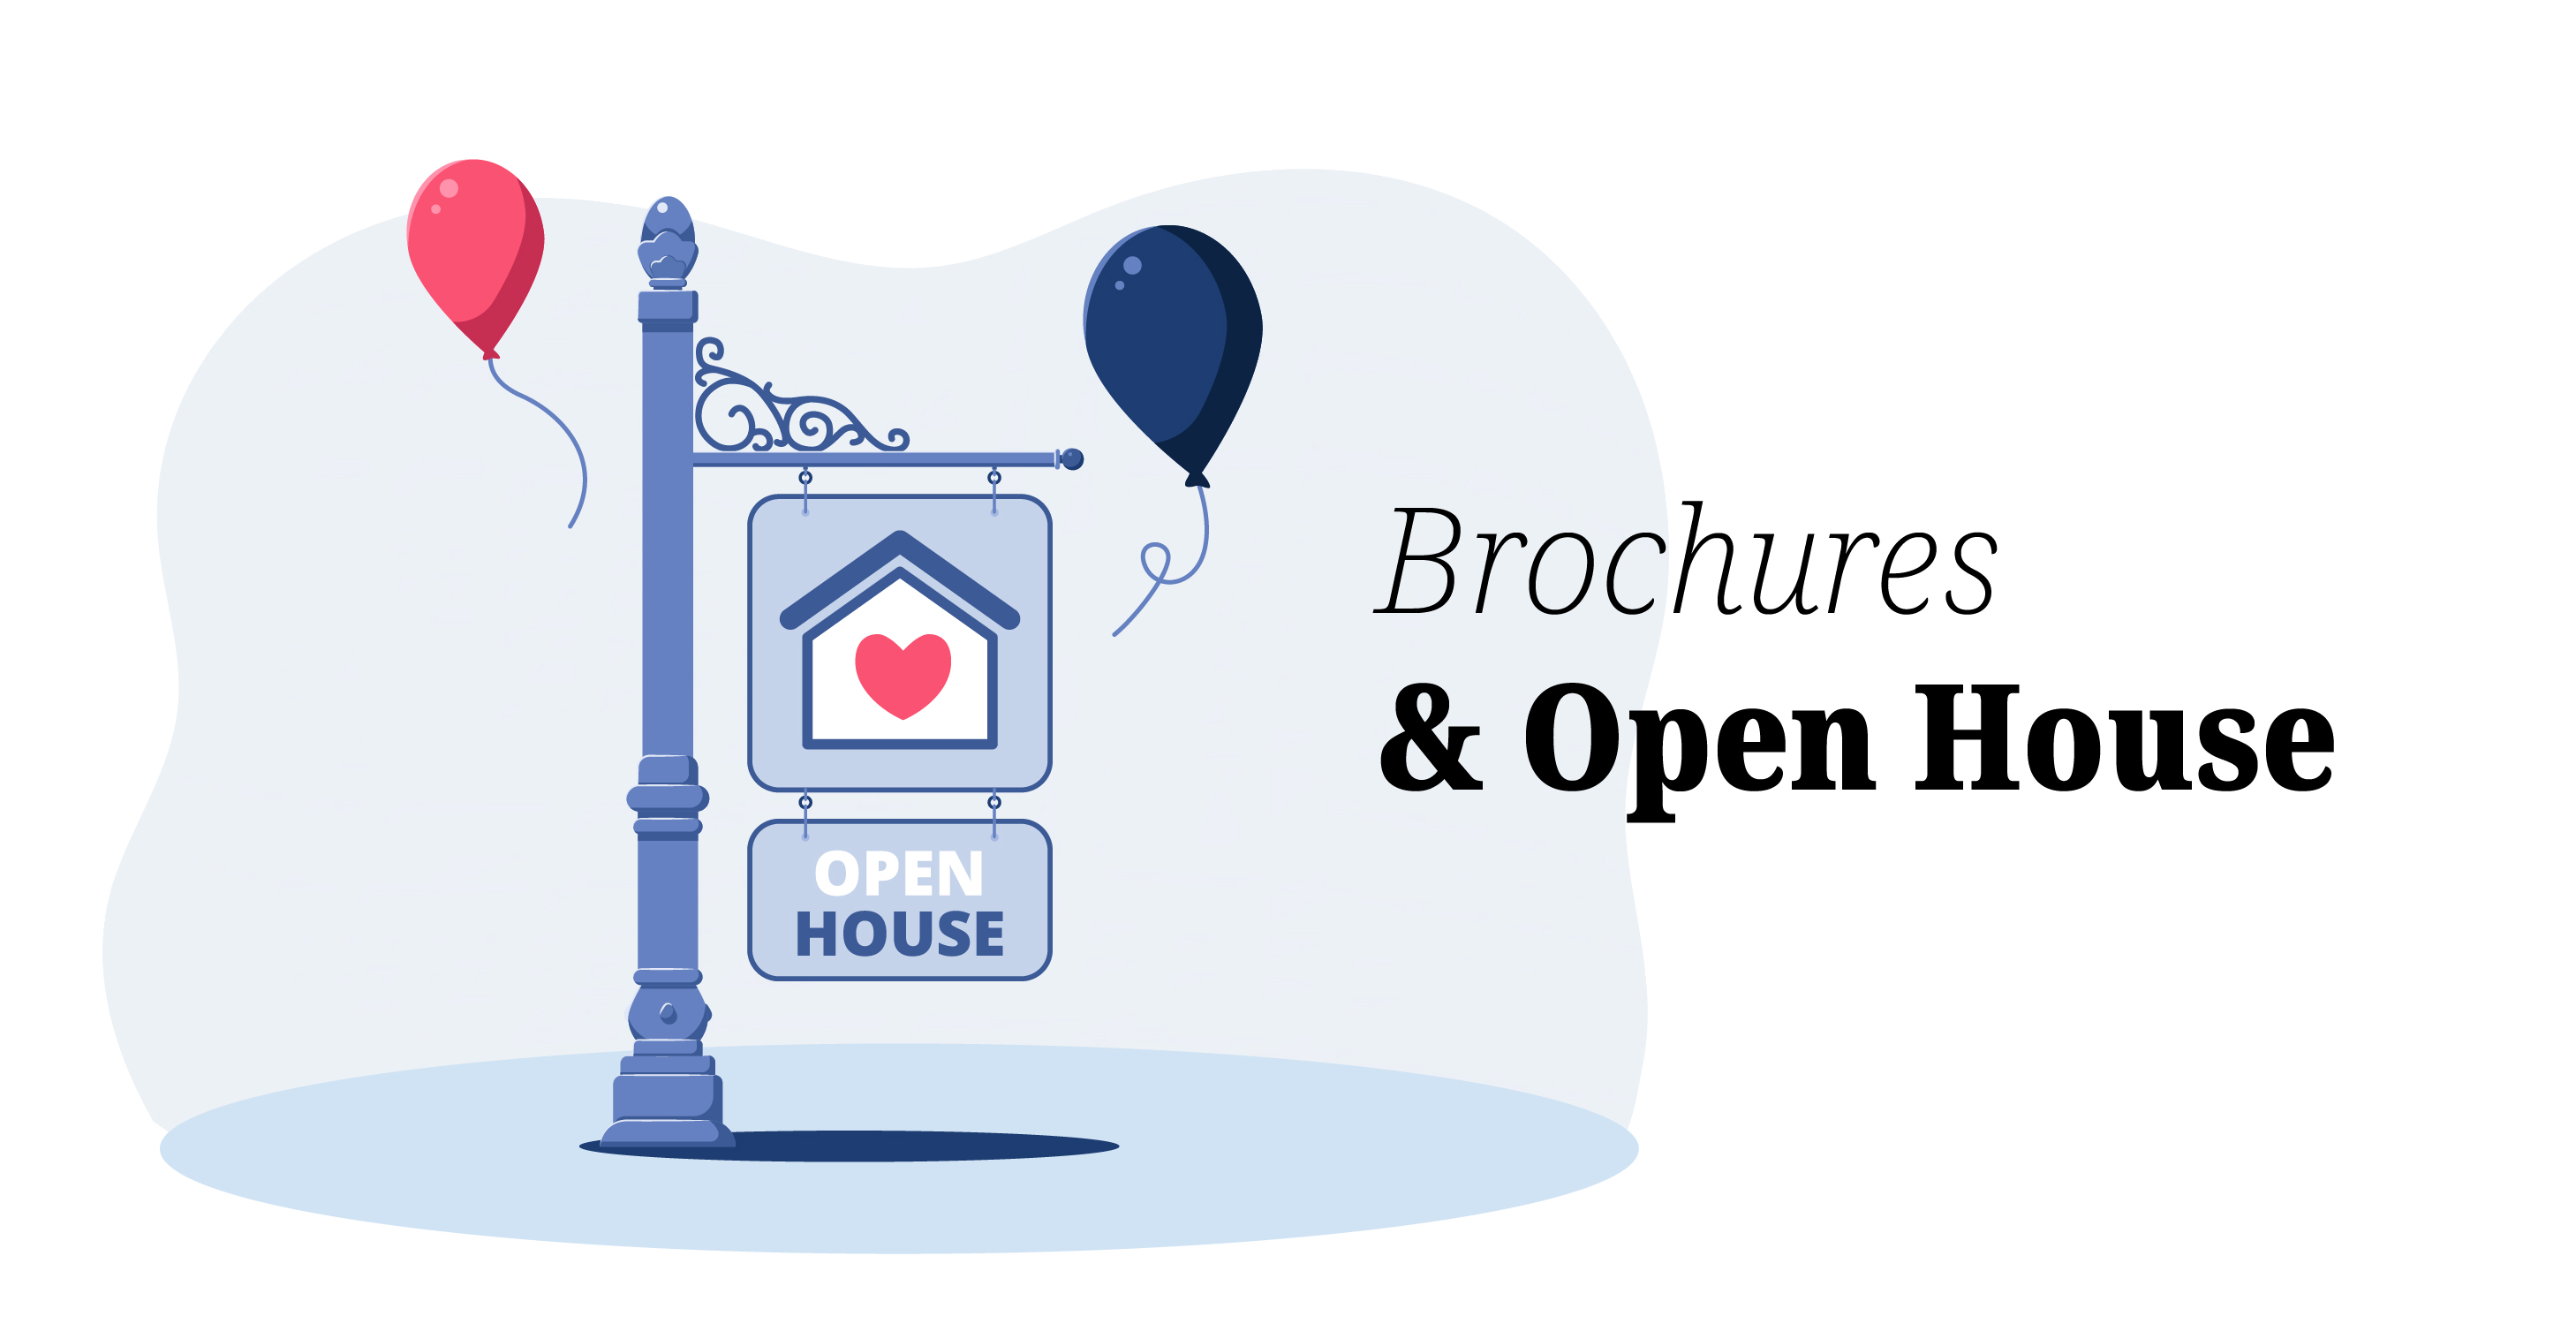 Brochures & Open House